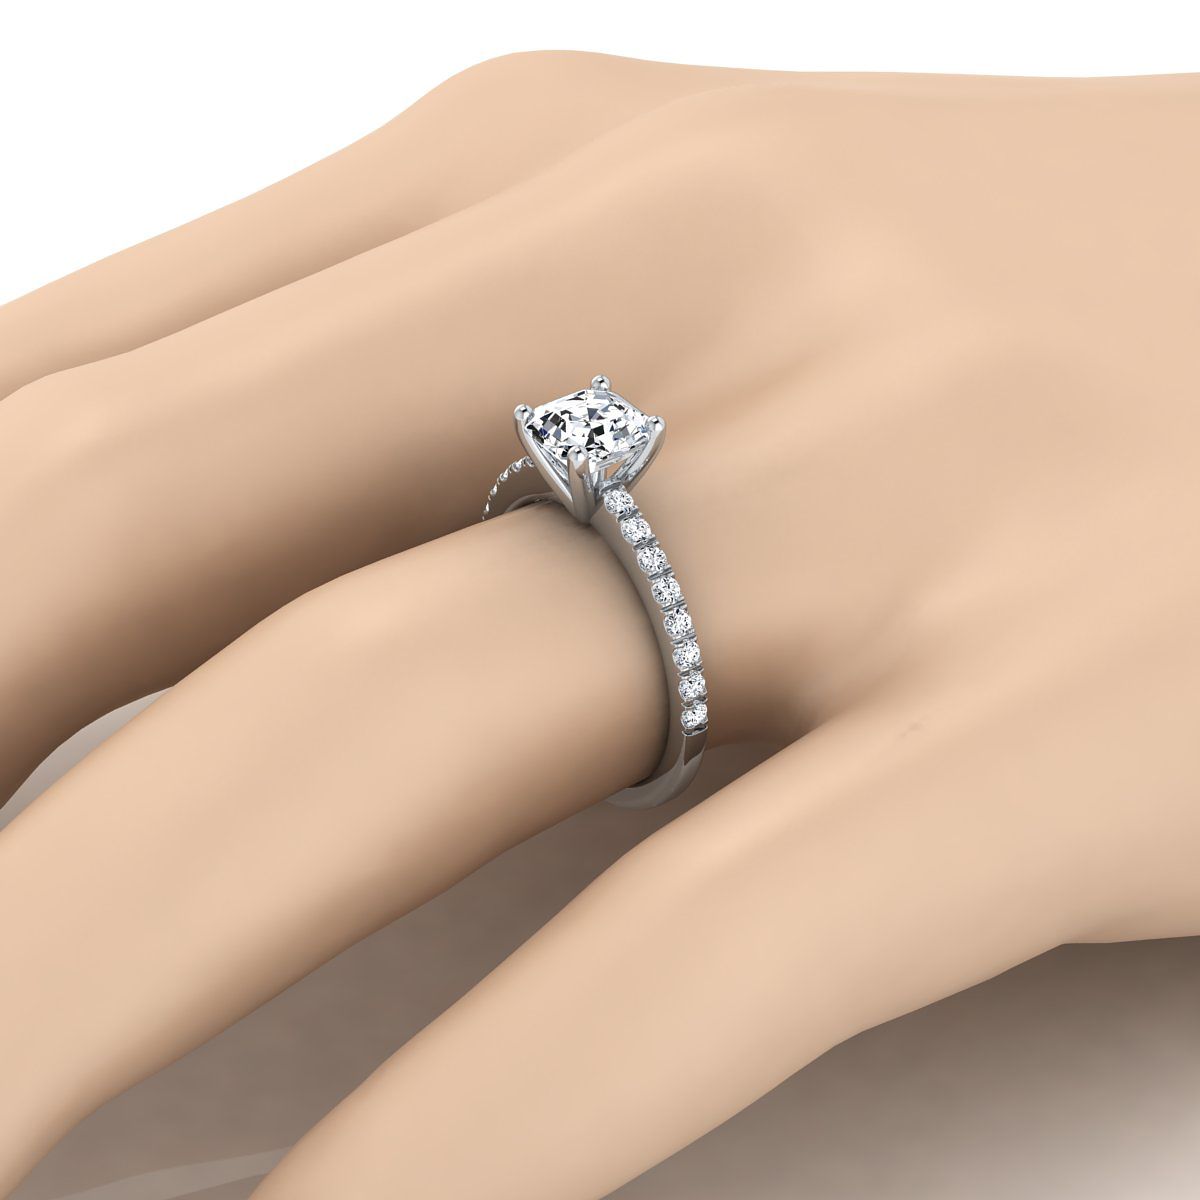 Platinum Asscher Cut Simple Linear Diamond Pave Engagement Ring -1/5ctw